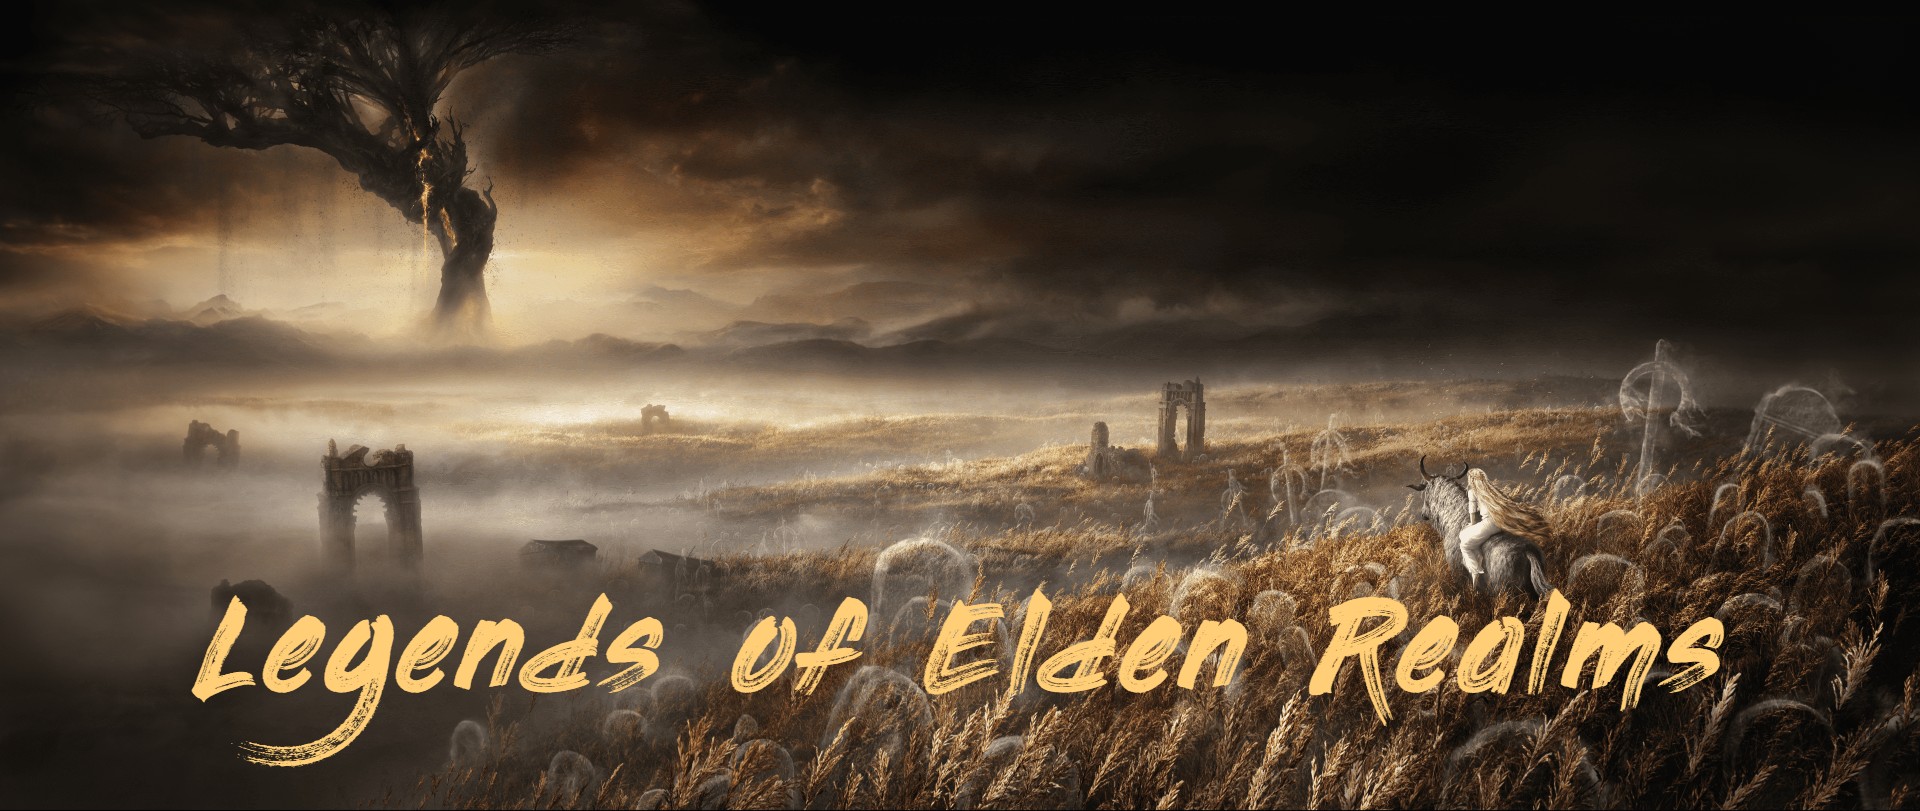 Legends of Elden Realms